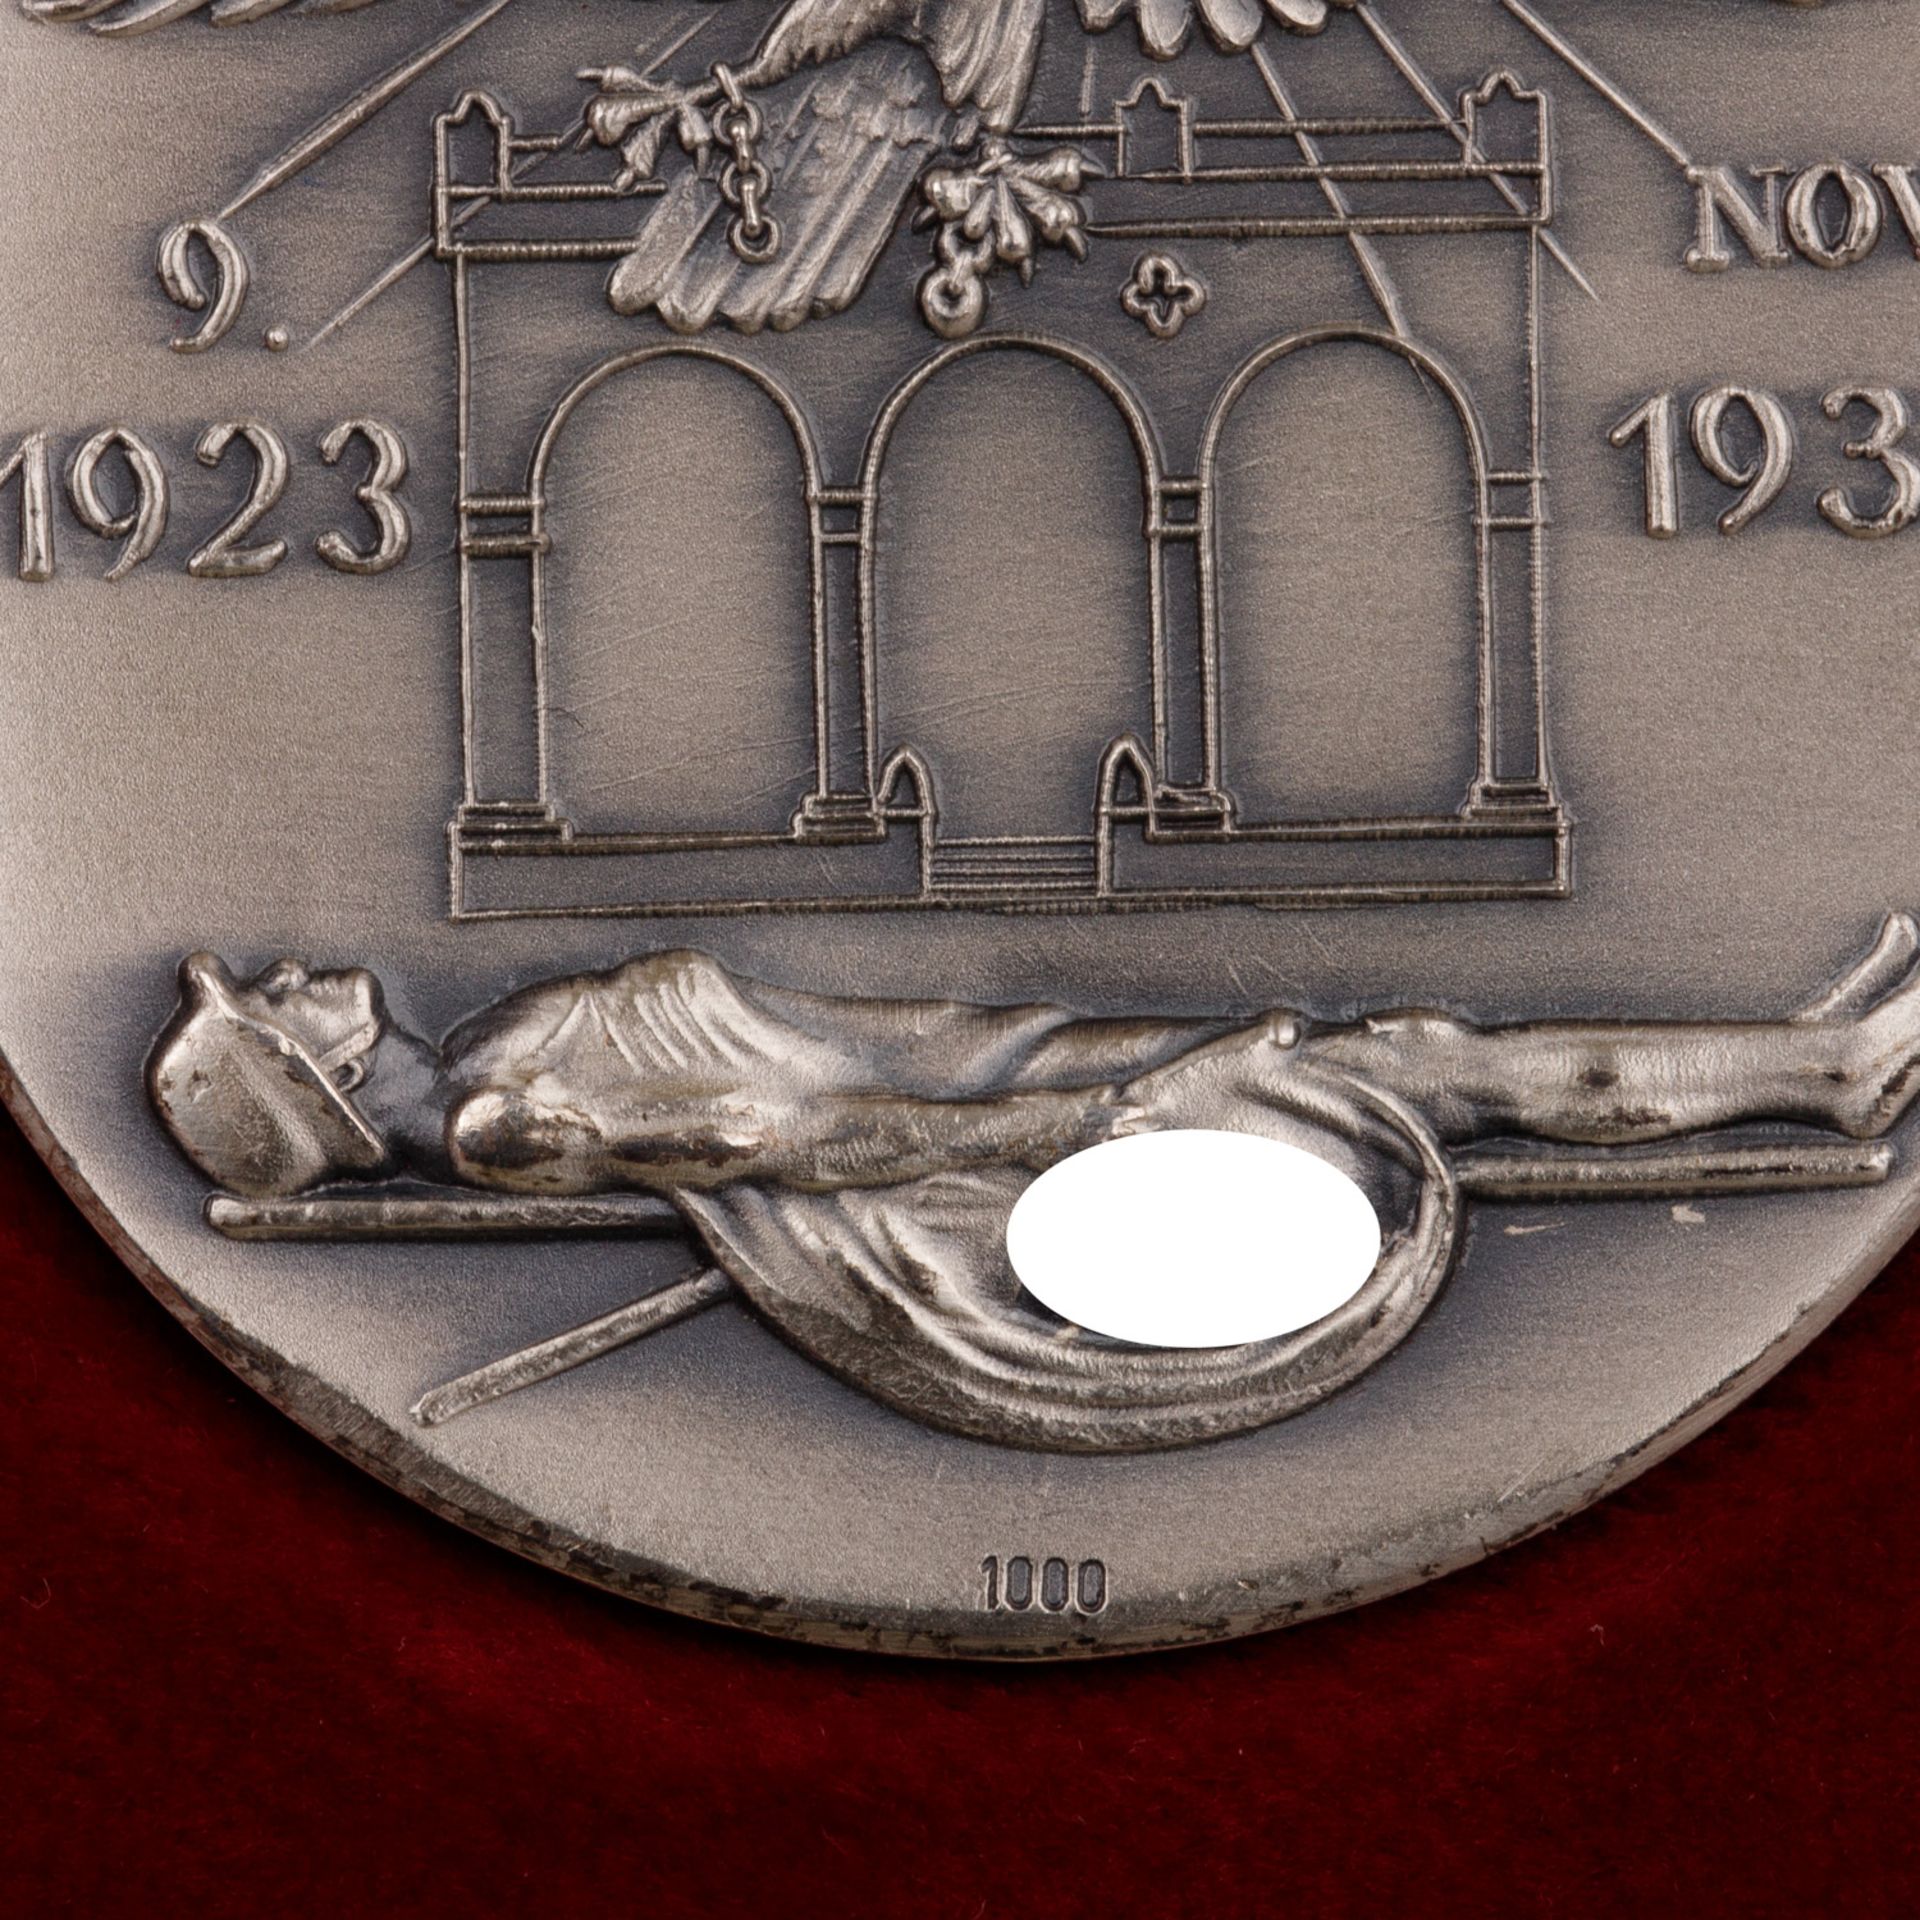 Deutsches Reich 1933-1945 - Extrem selten als Set angebotene Medaillen-Trilogie in GOLD (999), SILBE - Bild 5 aus 6